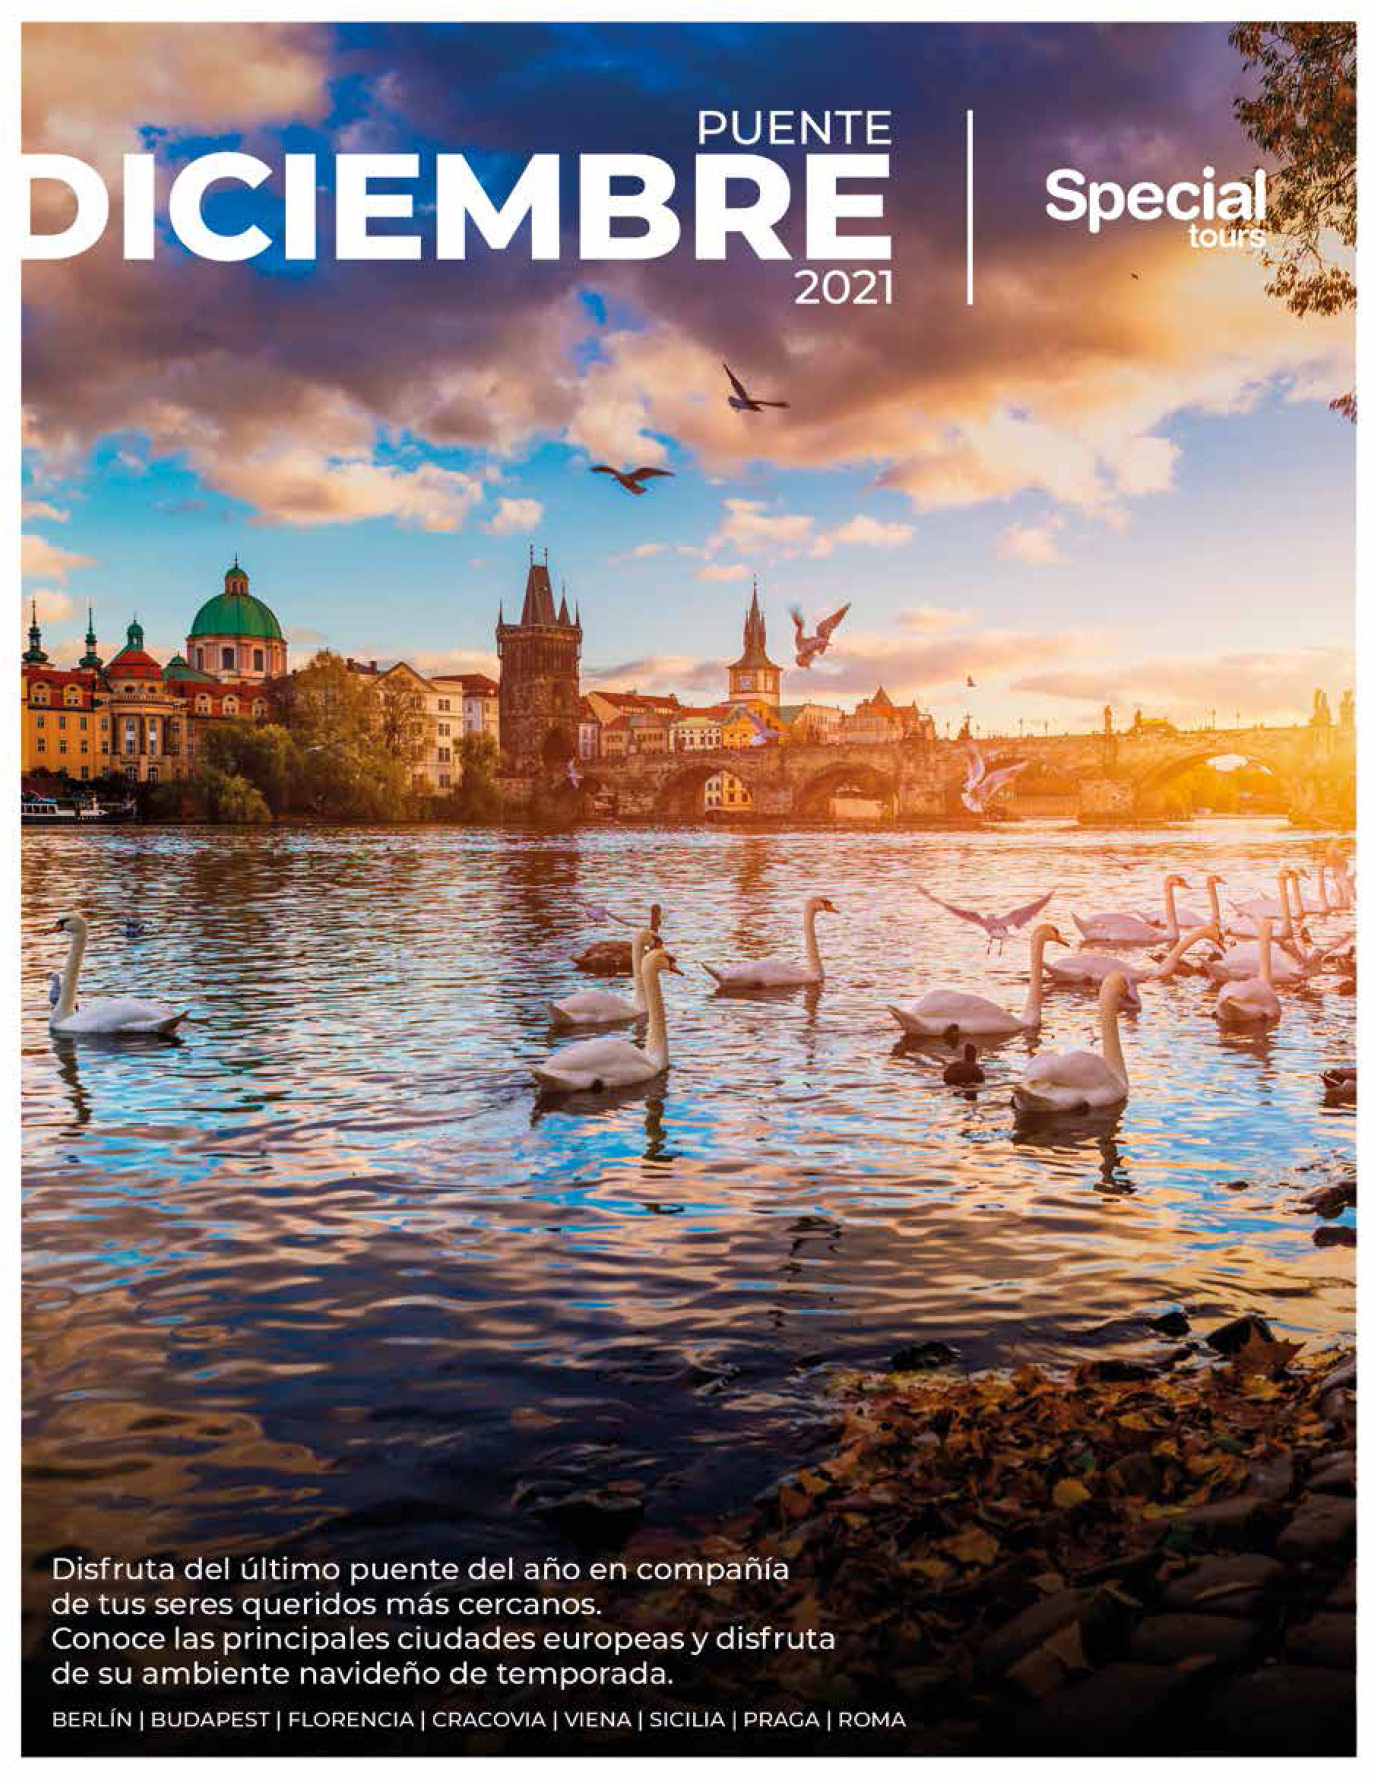 Catalogo Special Tours Puente de Diciembre 2021 en Europa circuitos con vuelos directos